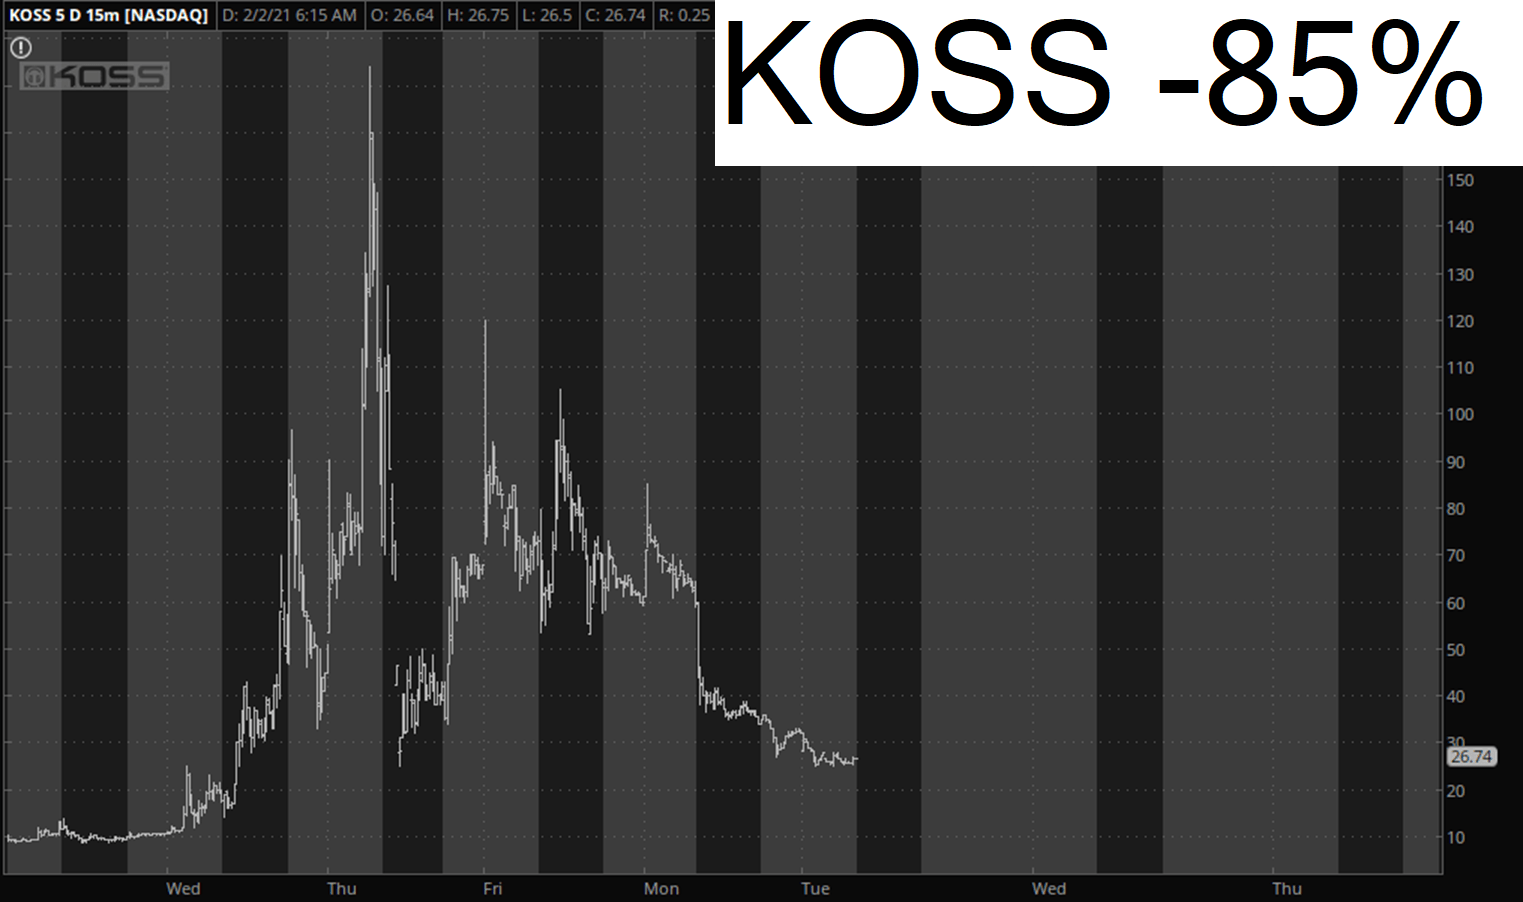 Koss Corp.